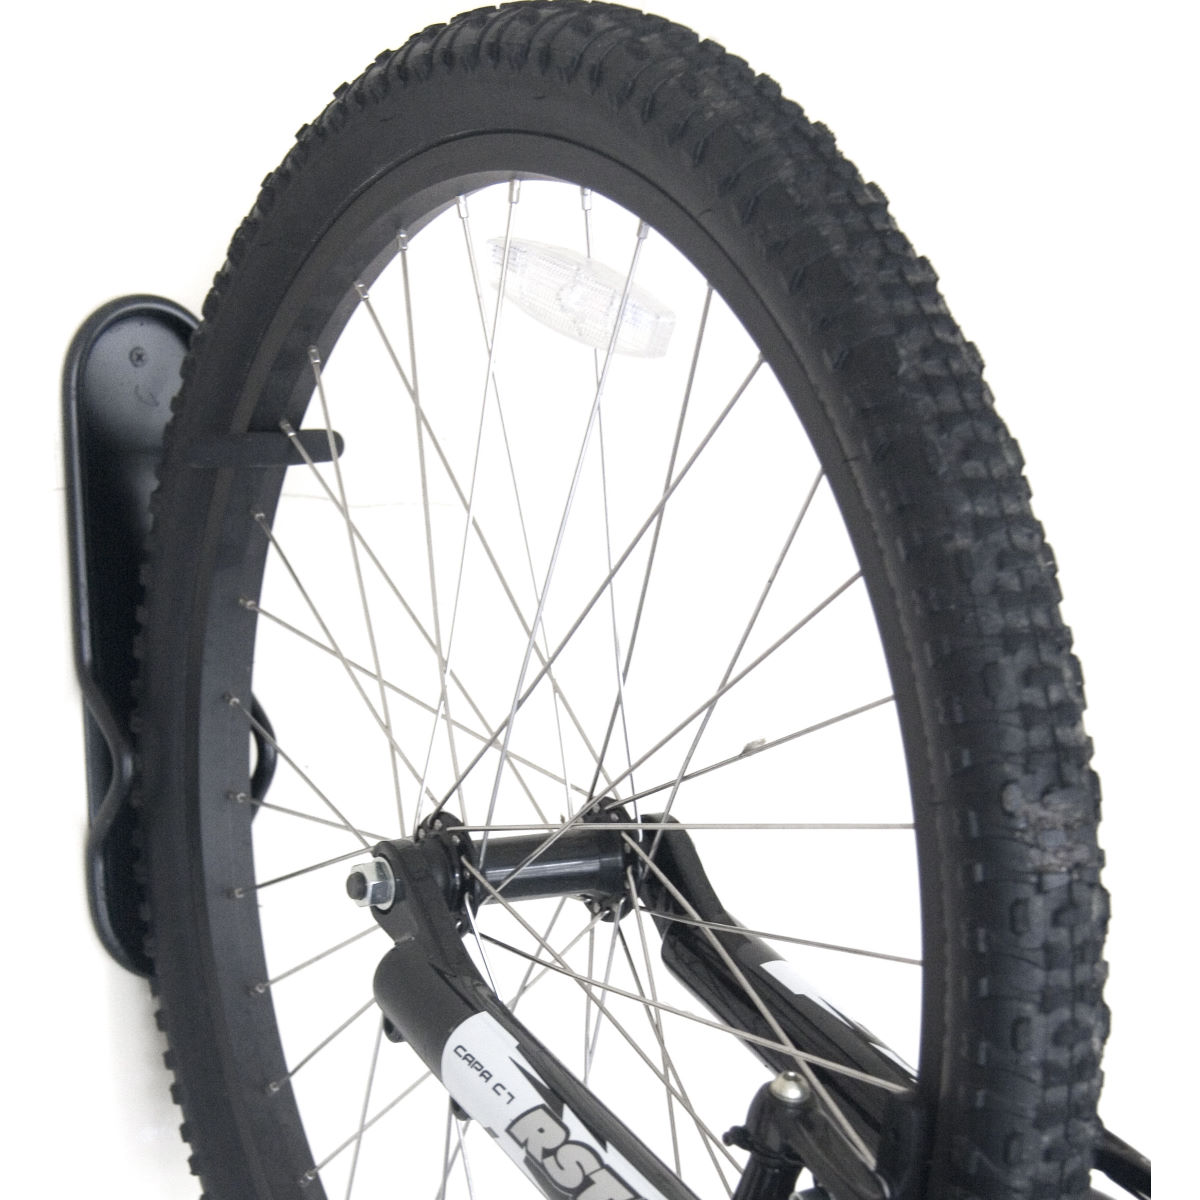 Soporte vertical Gear Up (para 1 bicicleta) - Soportes para bicicleta